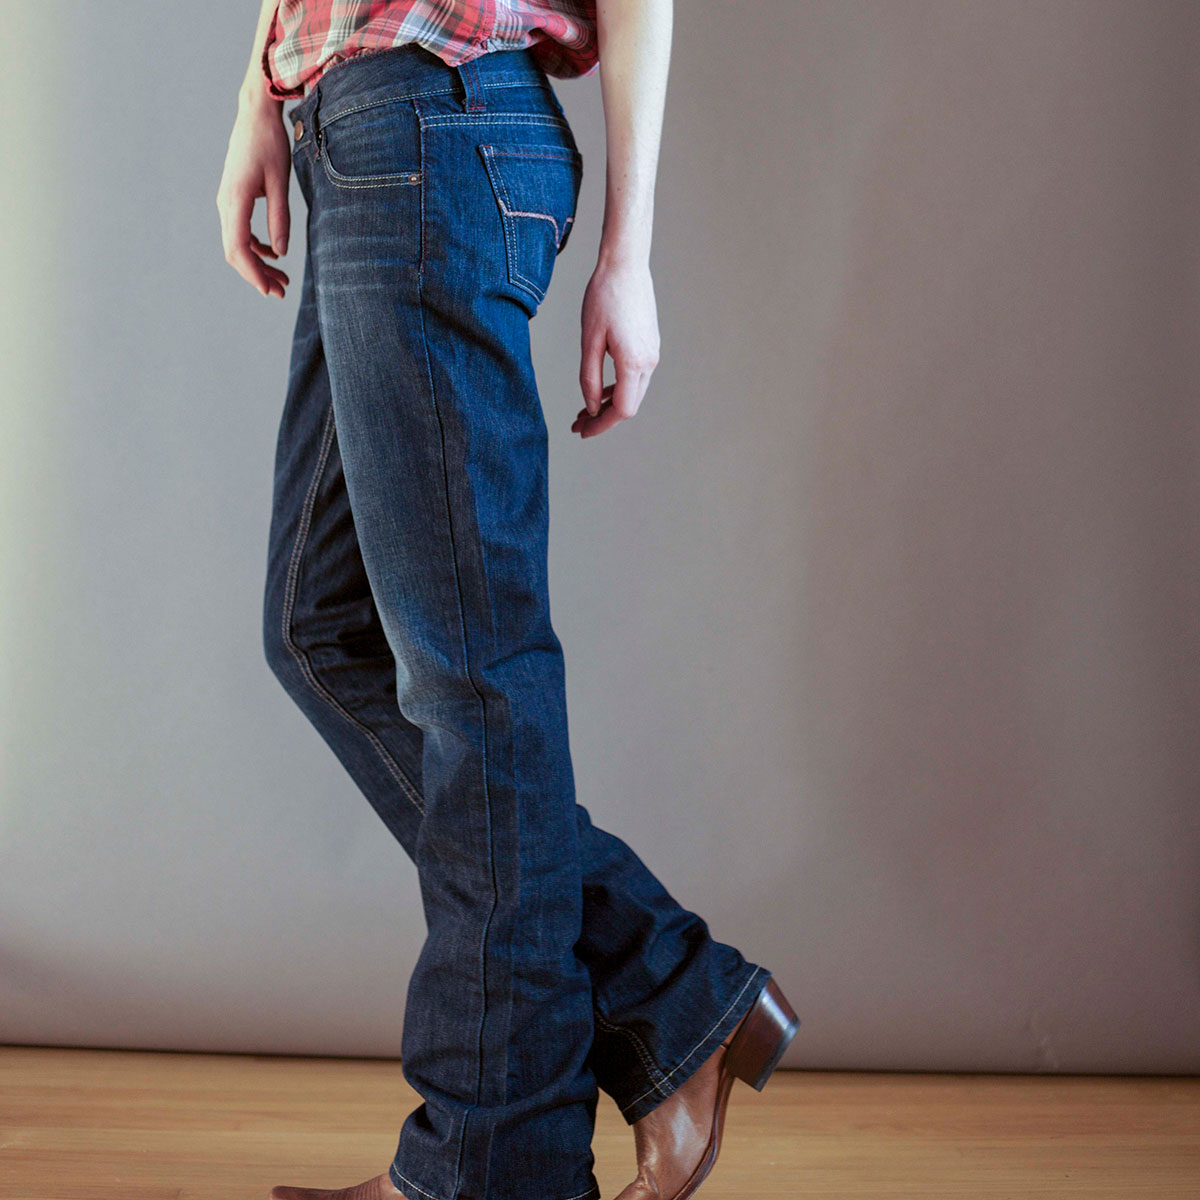 kimes ranch women's jeans